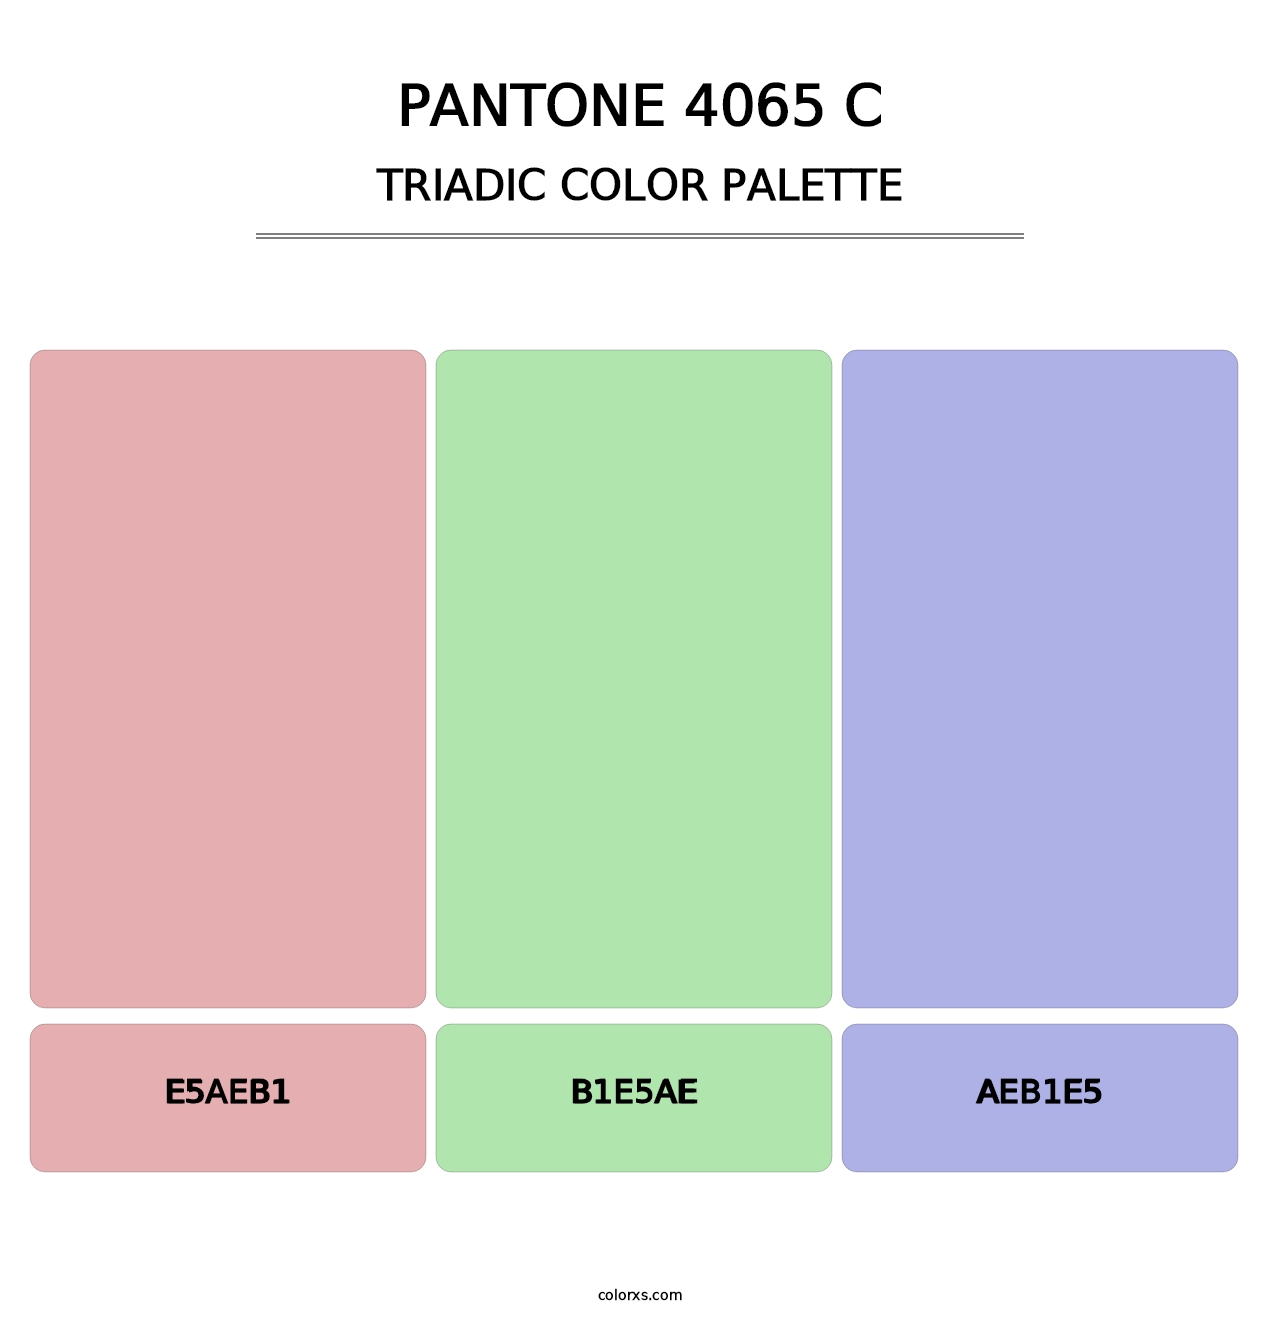 PANTONE 4065 C - Triadic Color Palette